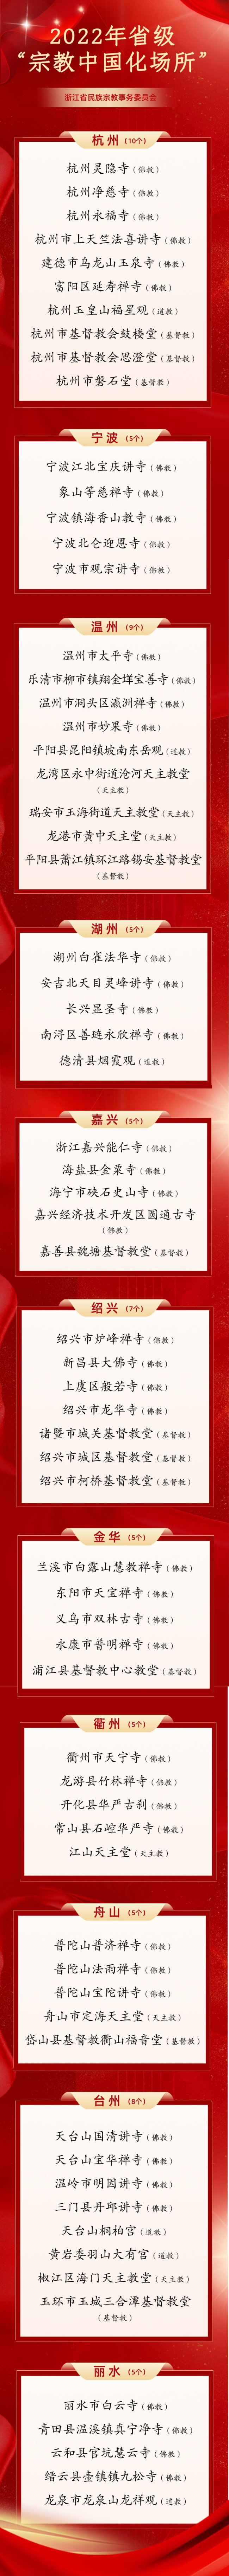 浙江省2022年“宗教中国化场所”名单公布